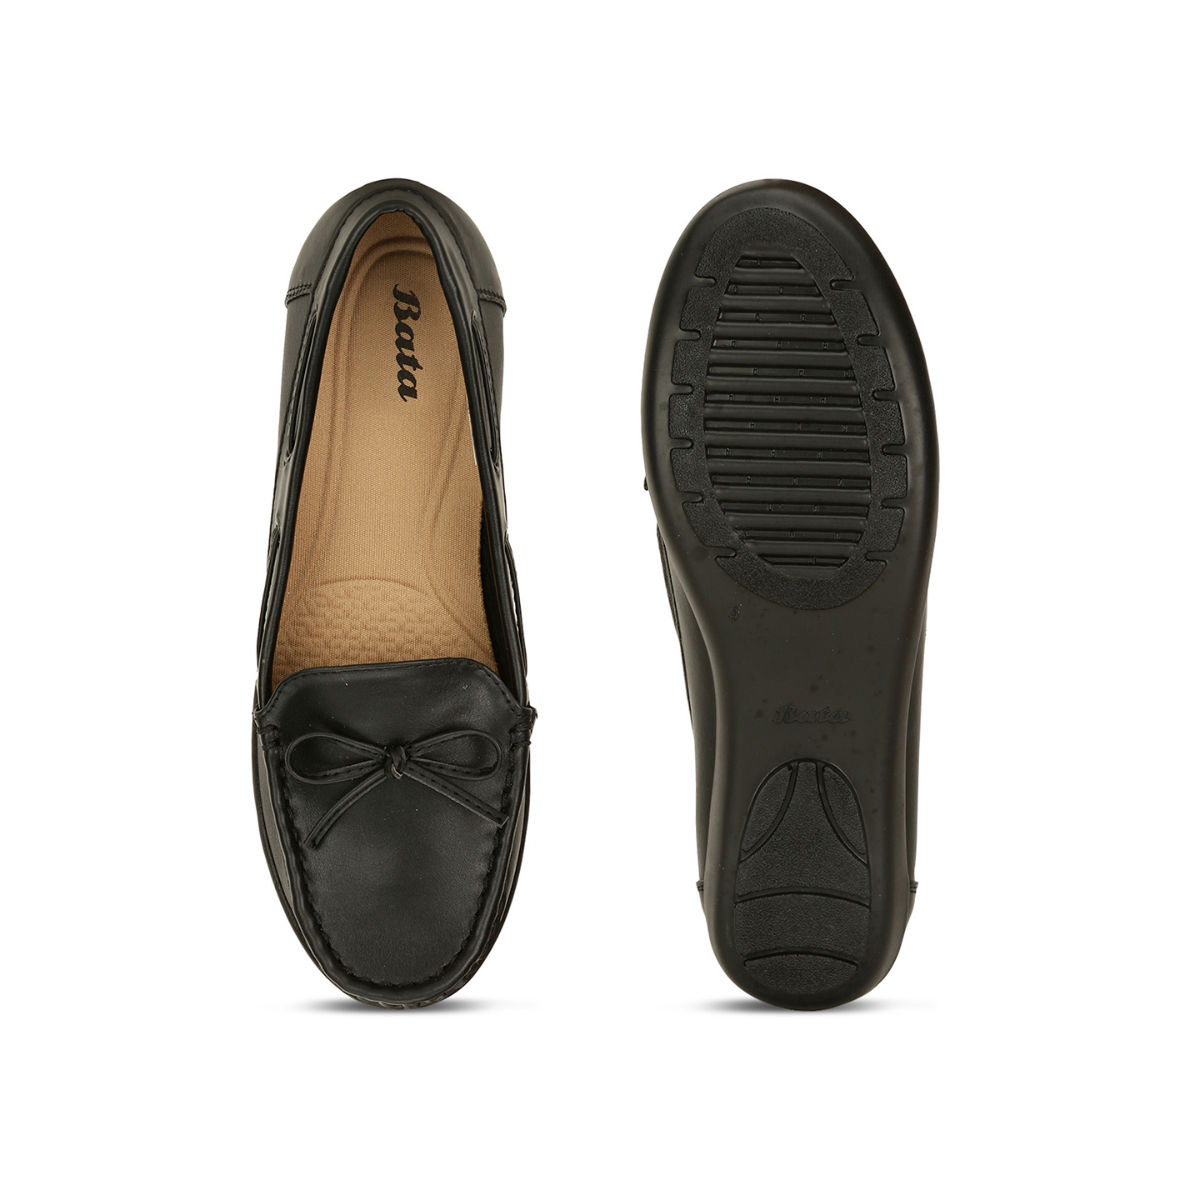 Buy Bata Solid Black Loafers Online